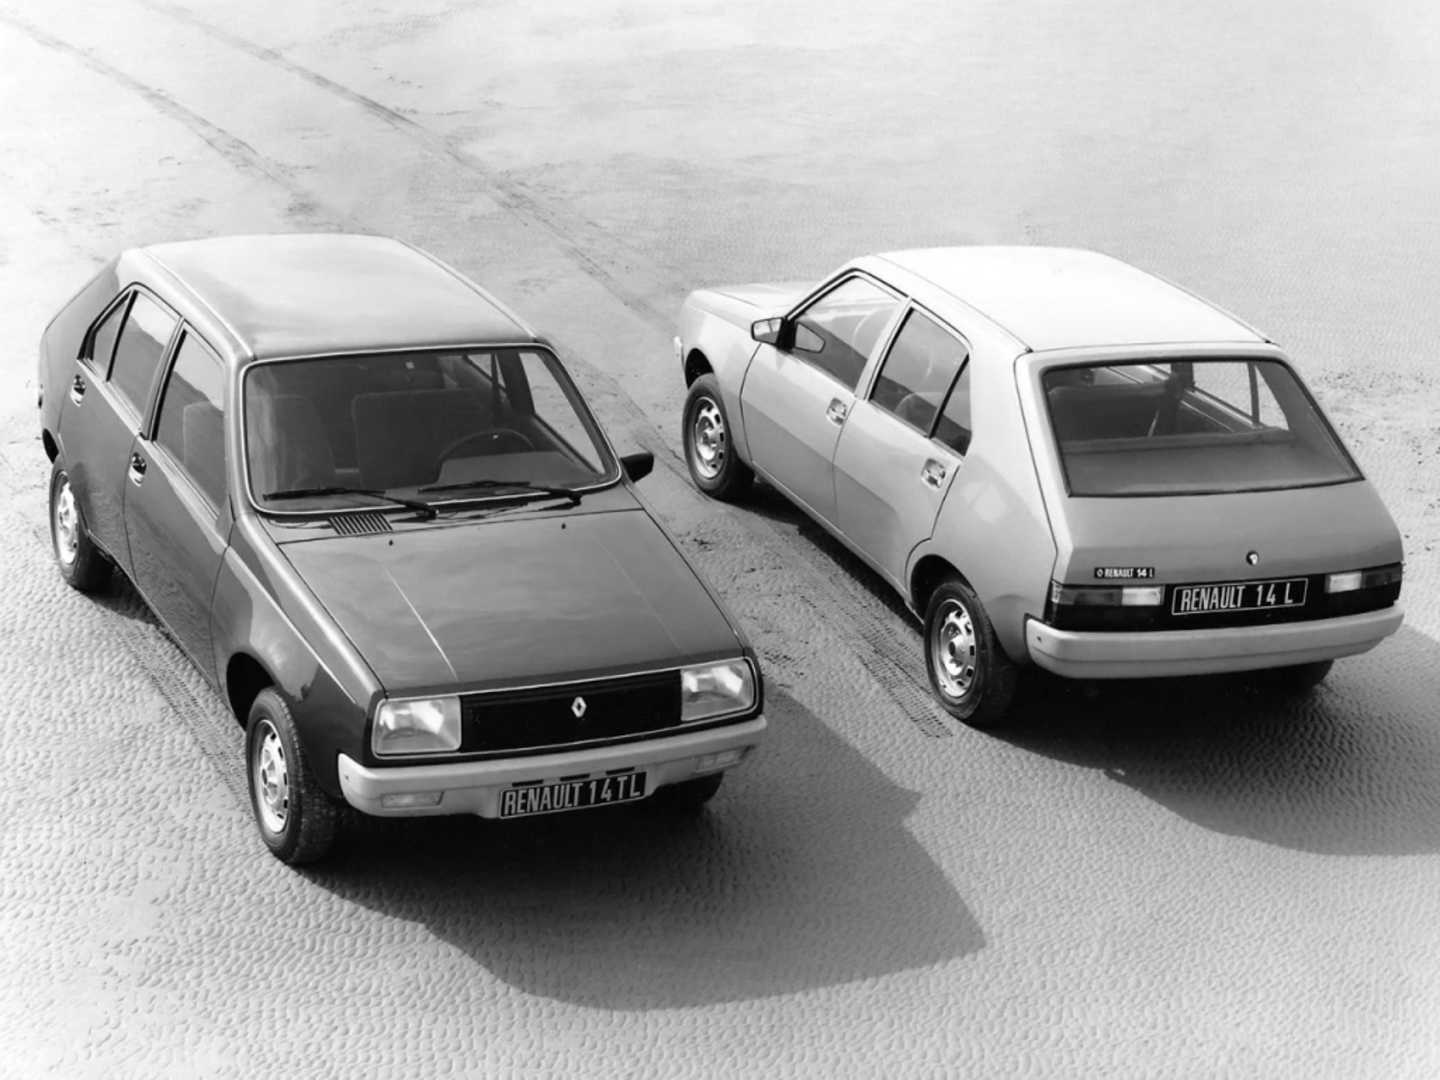 Renault 14 L et TL vue de haut